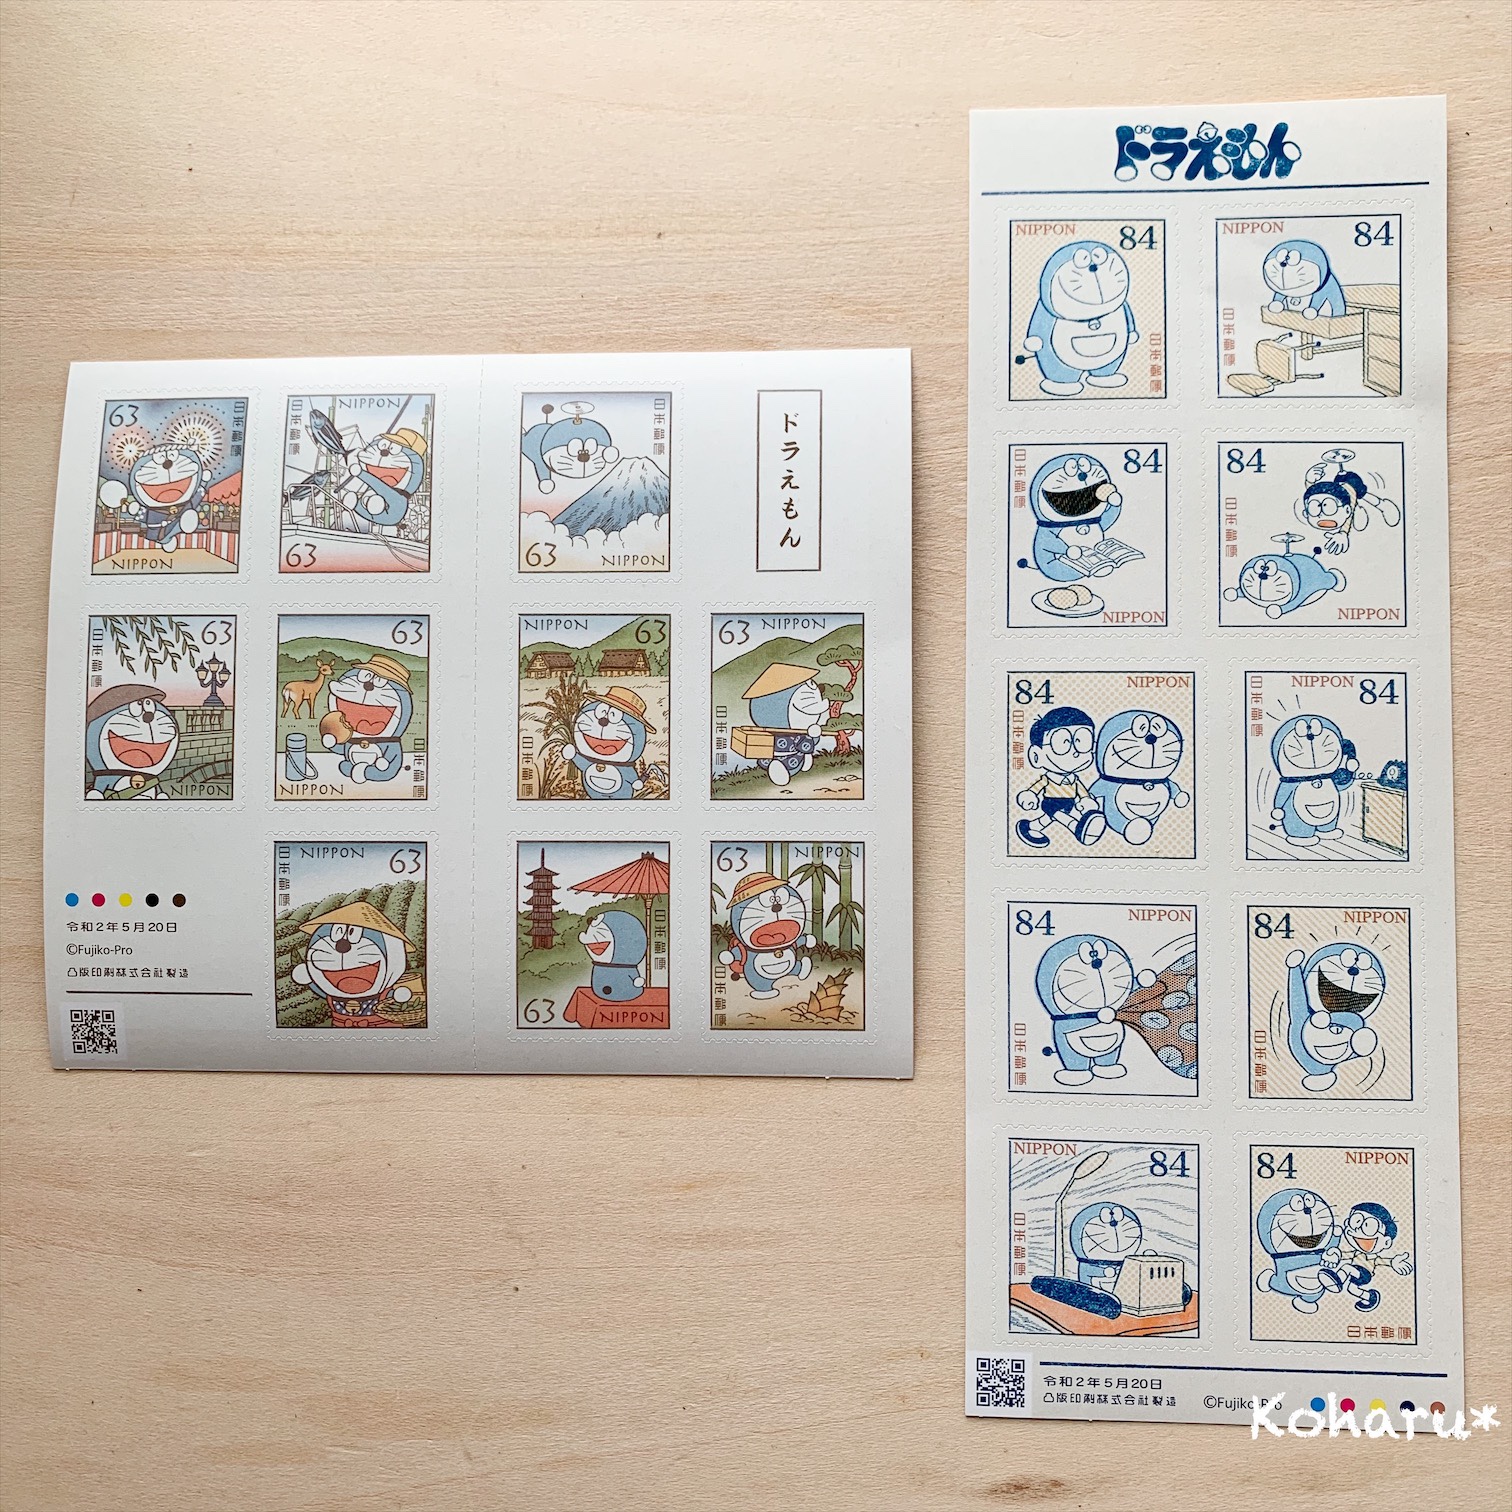 日本郵便からドラえもん切手が2種類発売開始 やさしいカラーの2シート 小春のきらきら日和